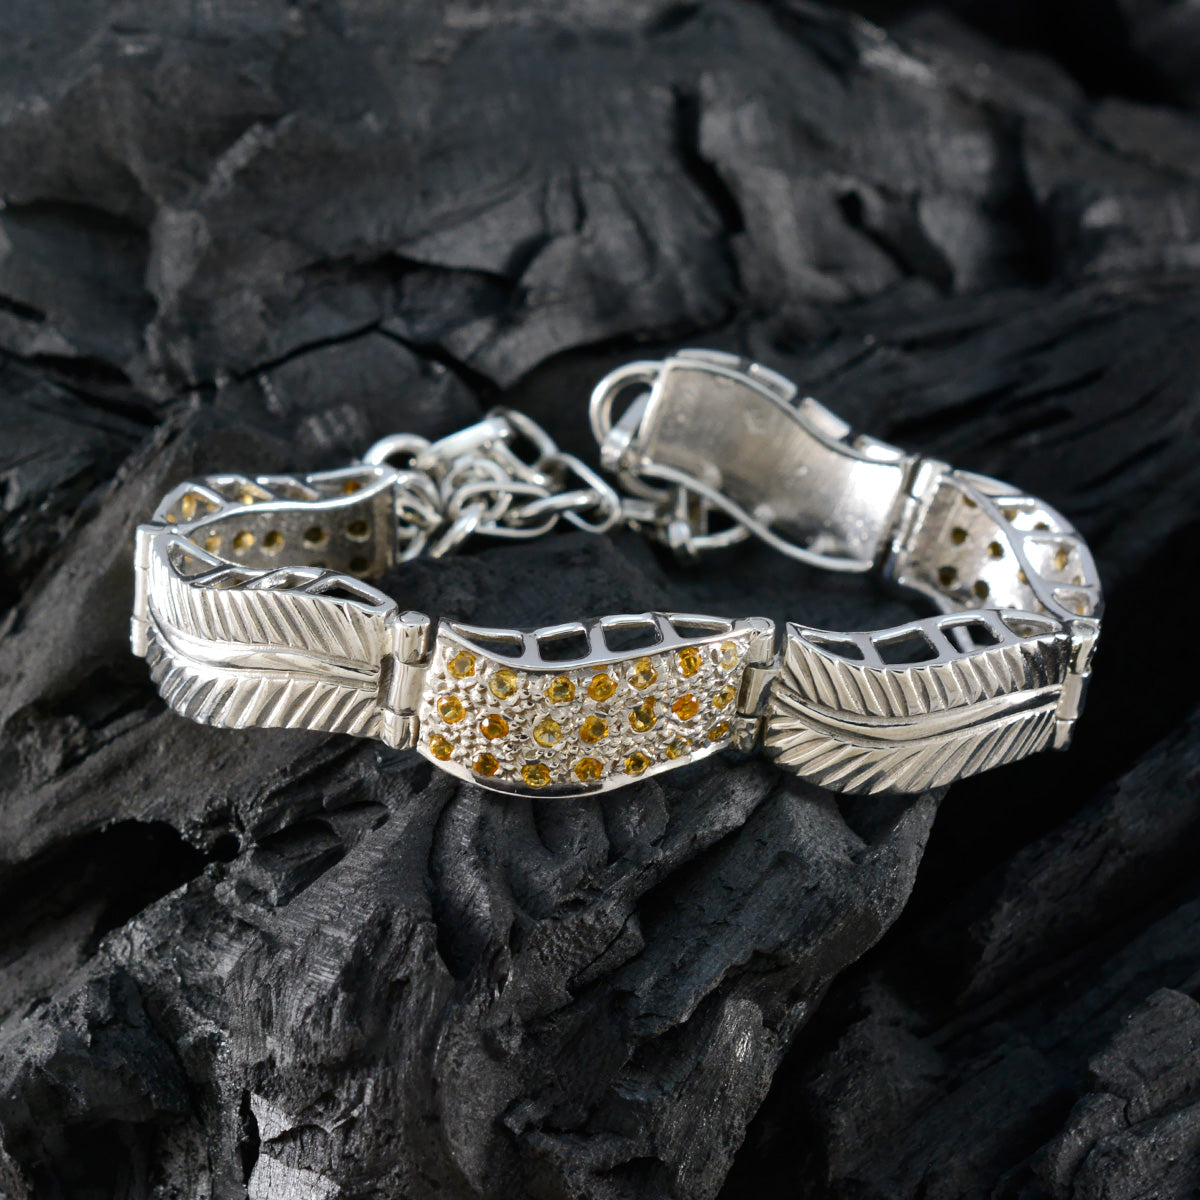 Riyo indien bracelet en argent sterling 925 pour femme bracelet citrine bracelet serti de lunette avec hameçon lien bracelet à breloques taille L 6-8,5 pouces.